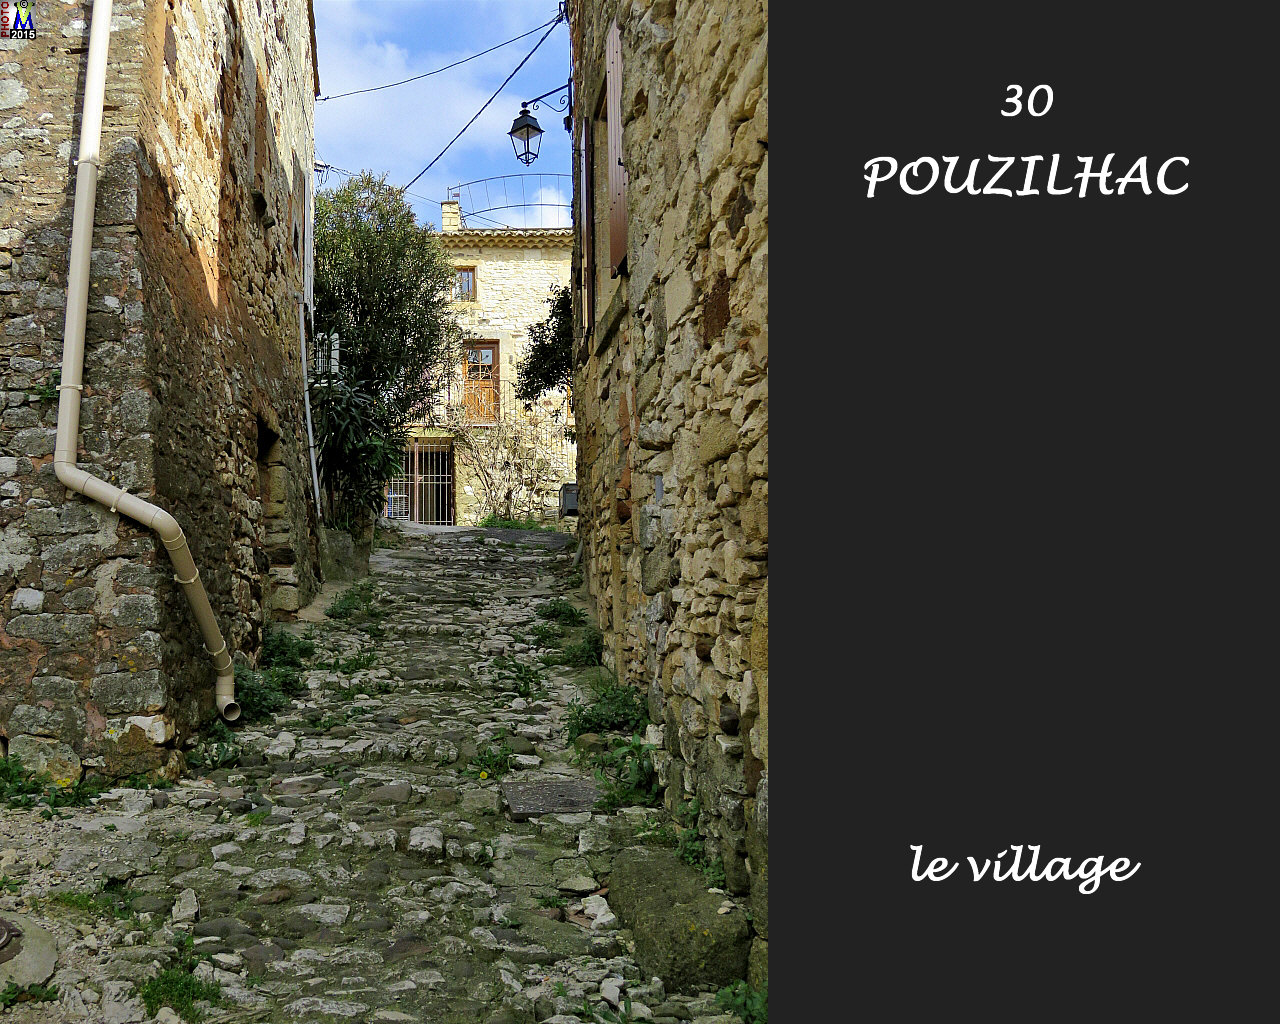 30POUZILHAC_village_112.jpg